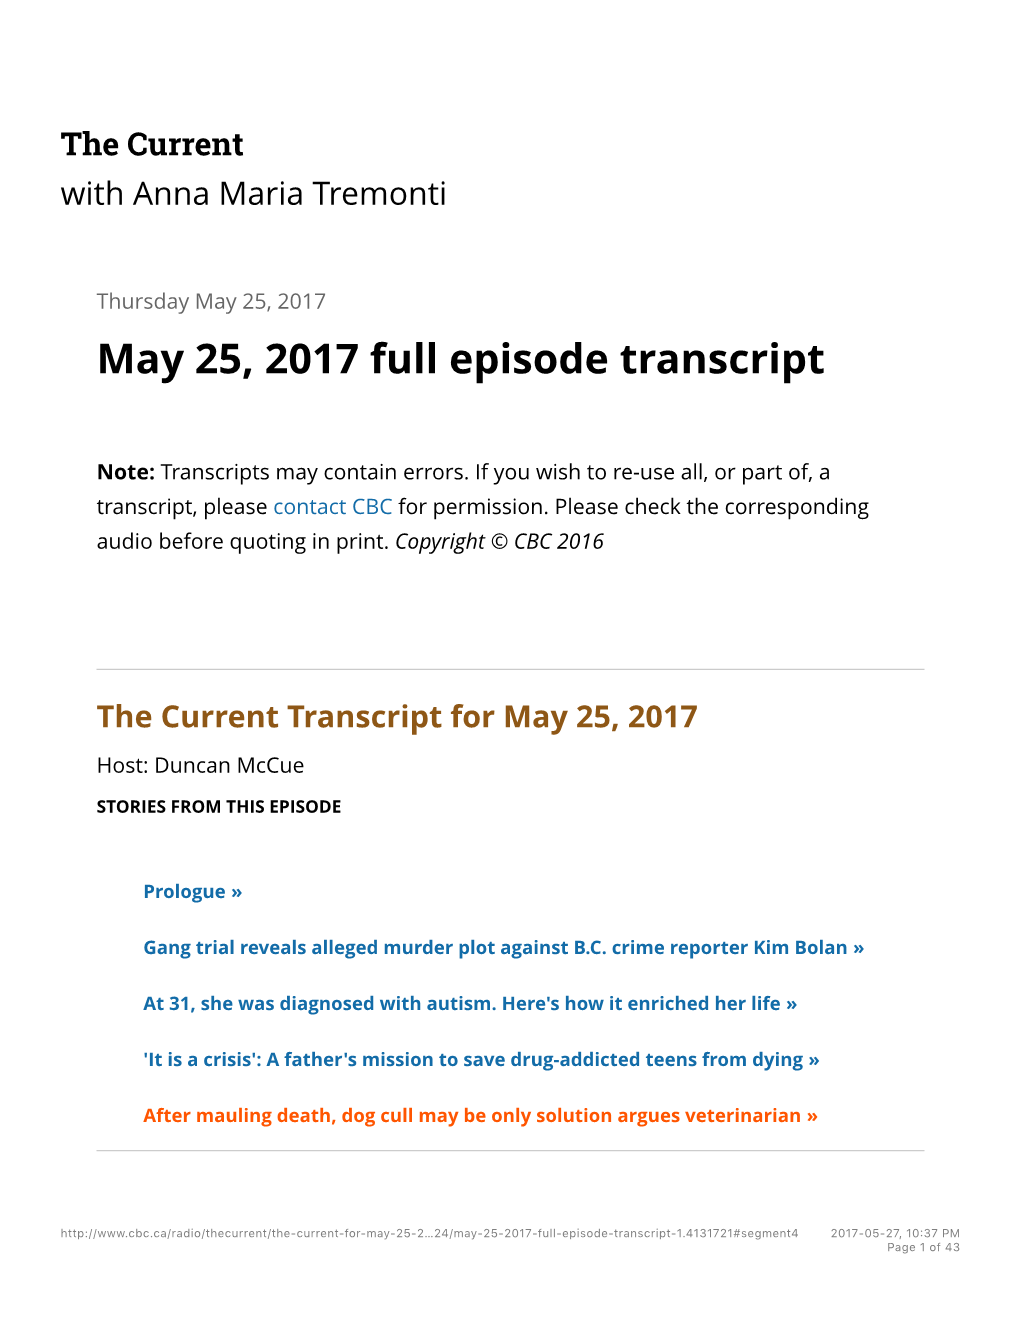 May 25, 2017 Full Episode Transcript